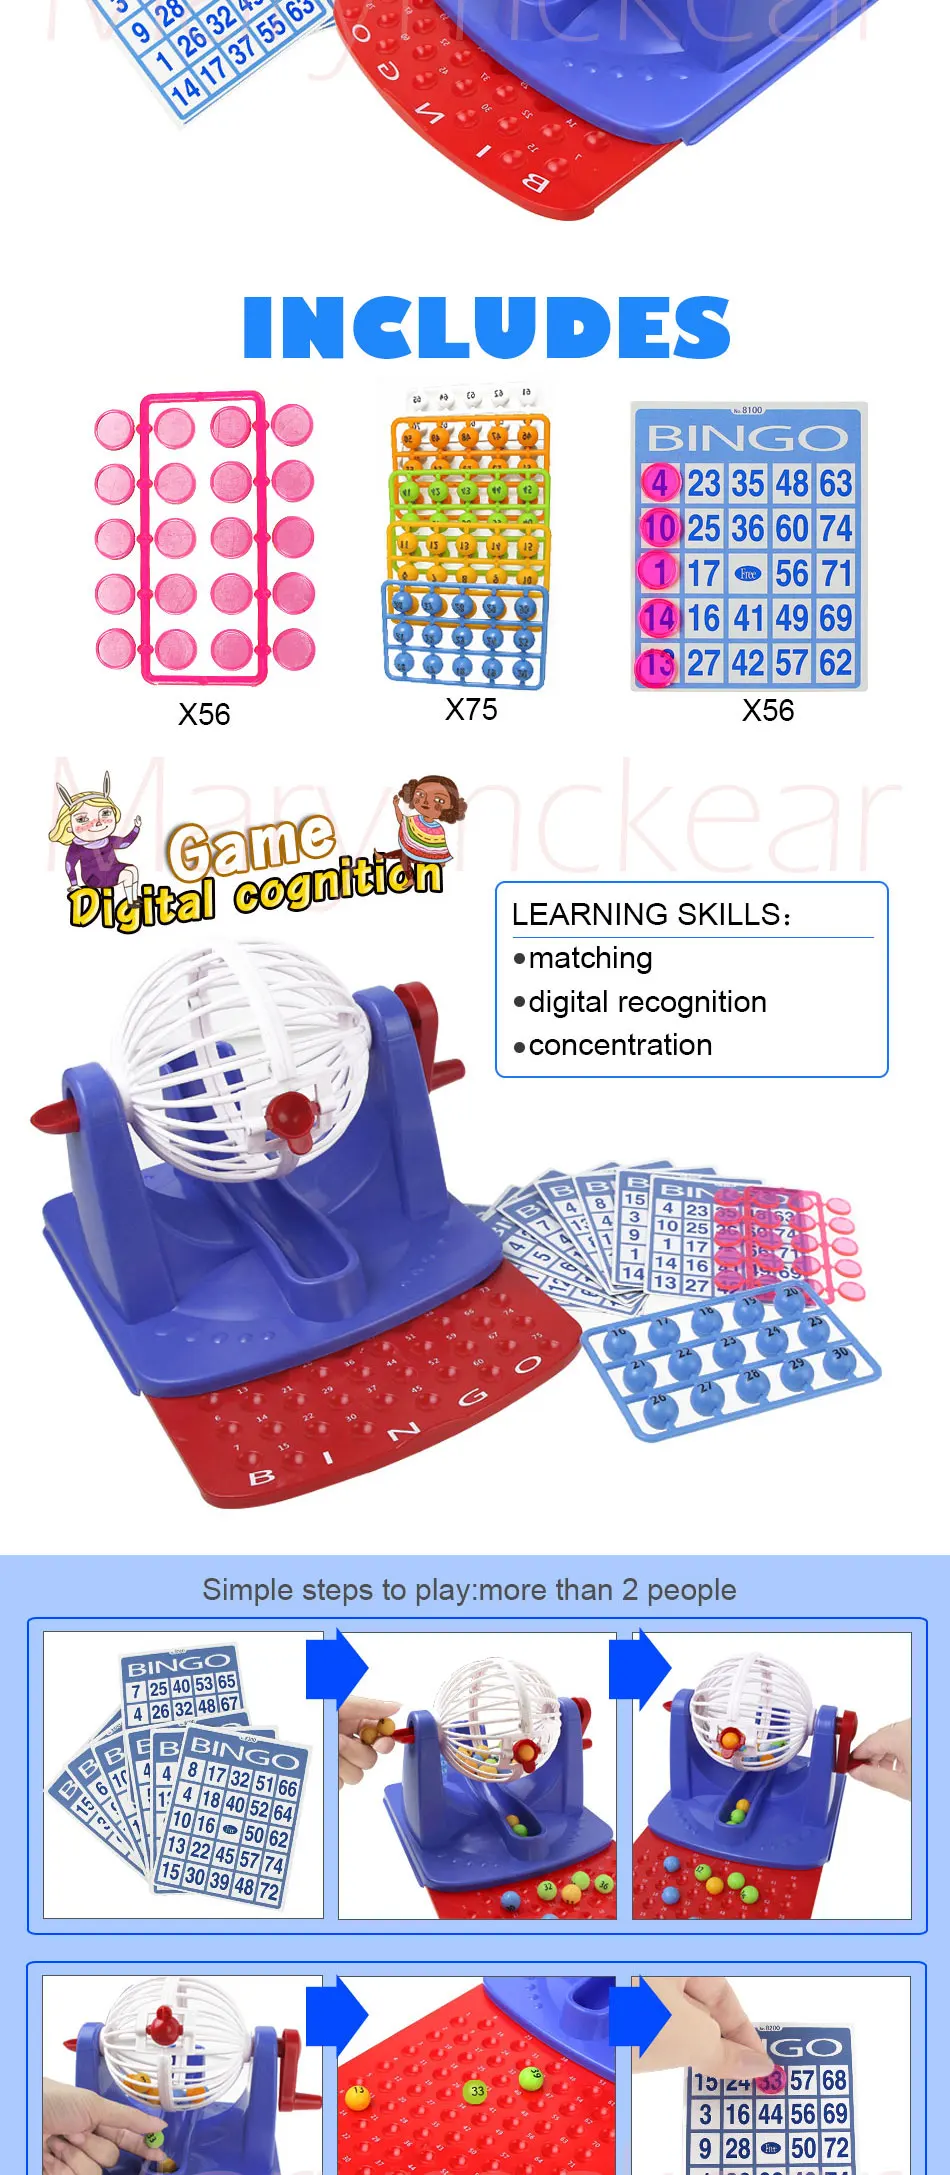 Бинго игра лотерея клетка лотерея смешной родитель-ребенок Интерактивная игрушка для семьи вечерние игра, настольная игра цифровая игрушка детская игрушка